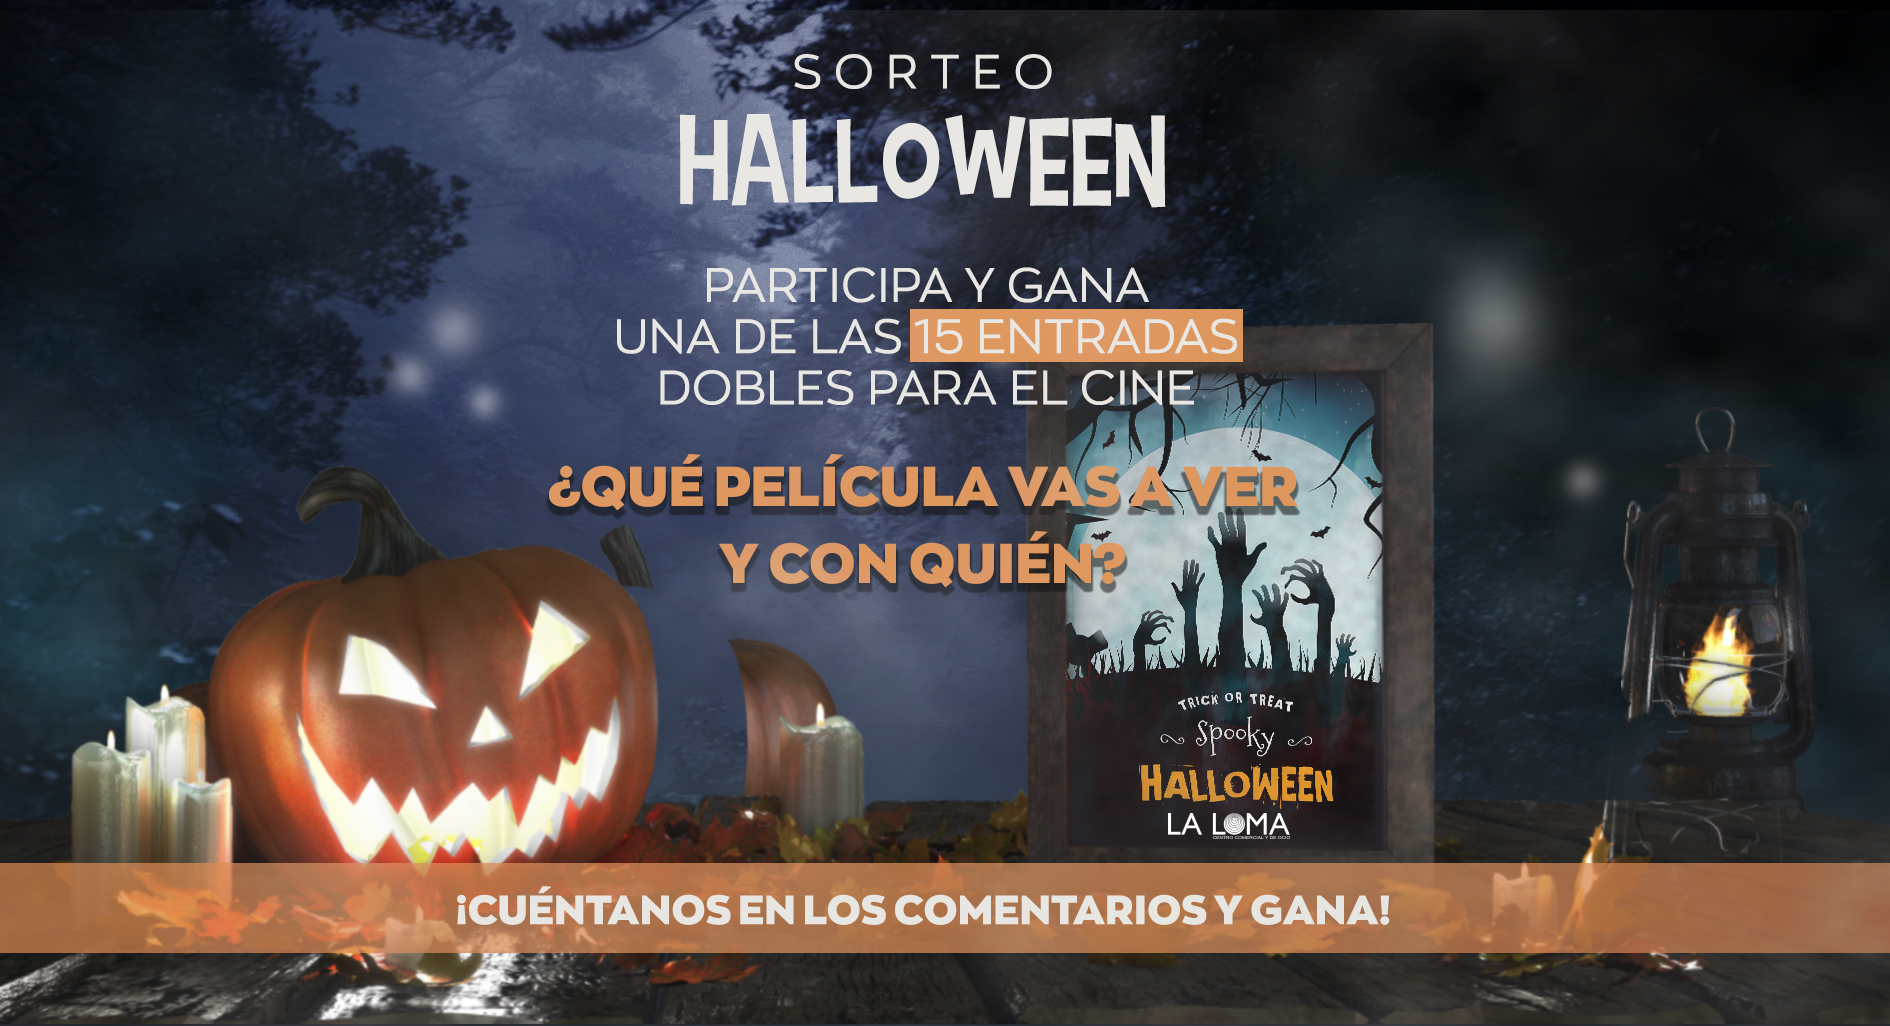 Sorteo Halloween Centro Comercial y de Ocio La Loma